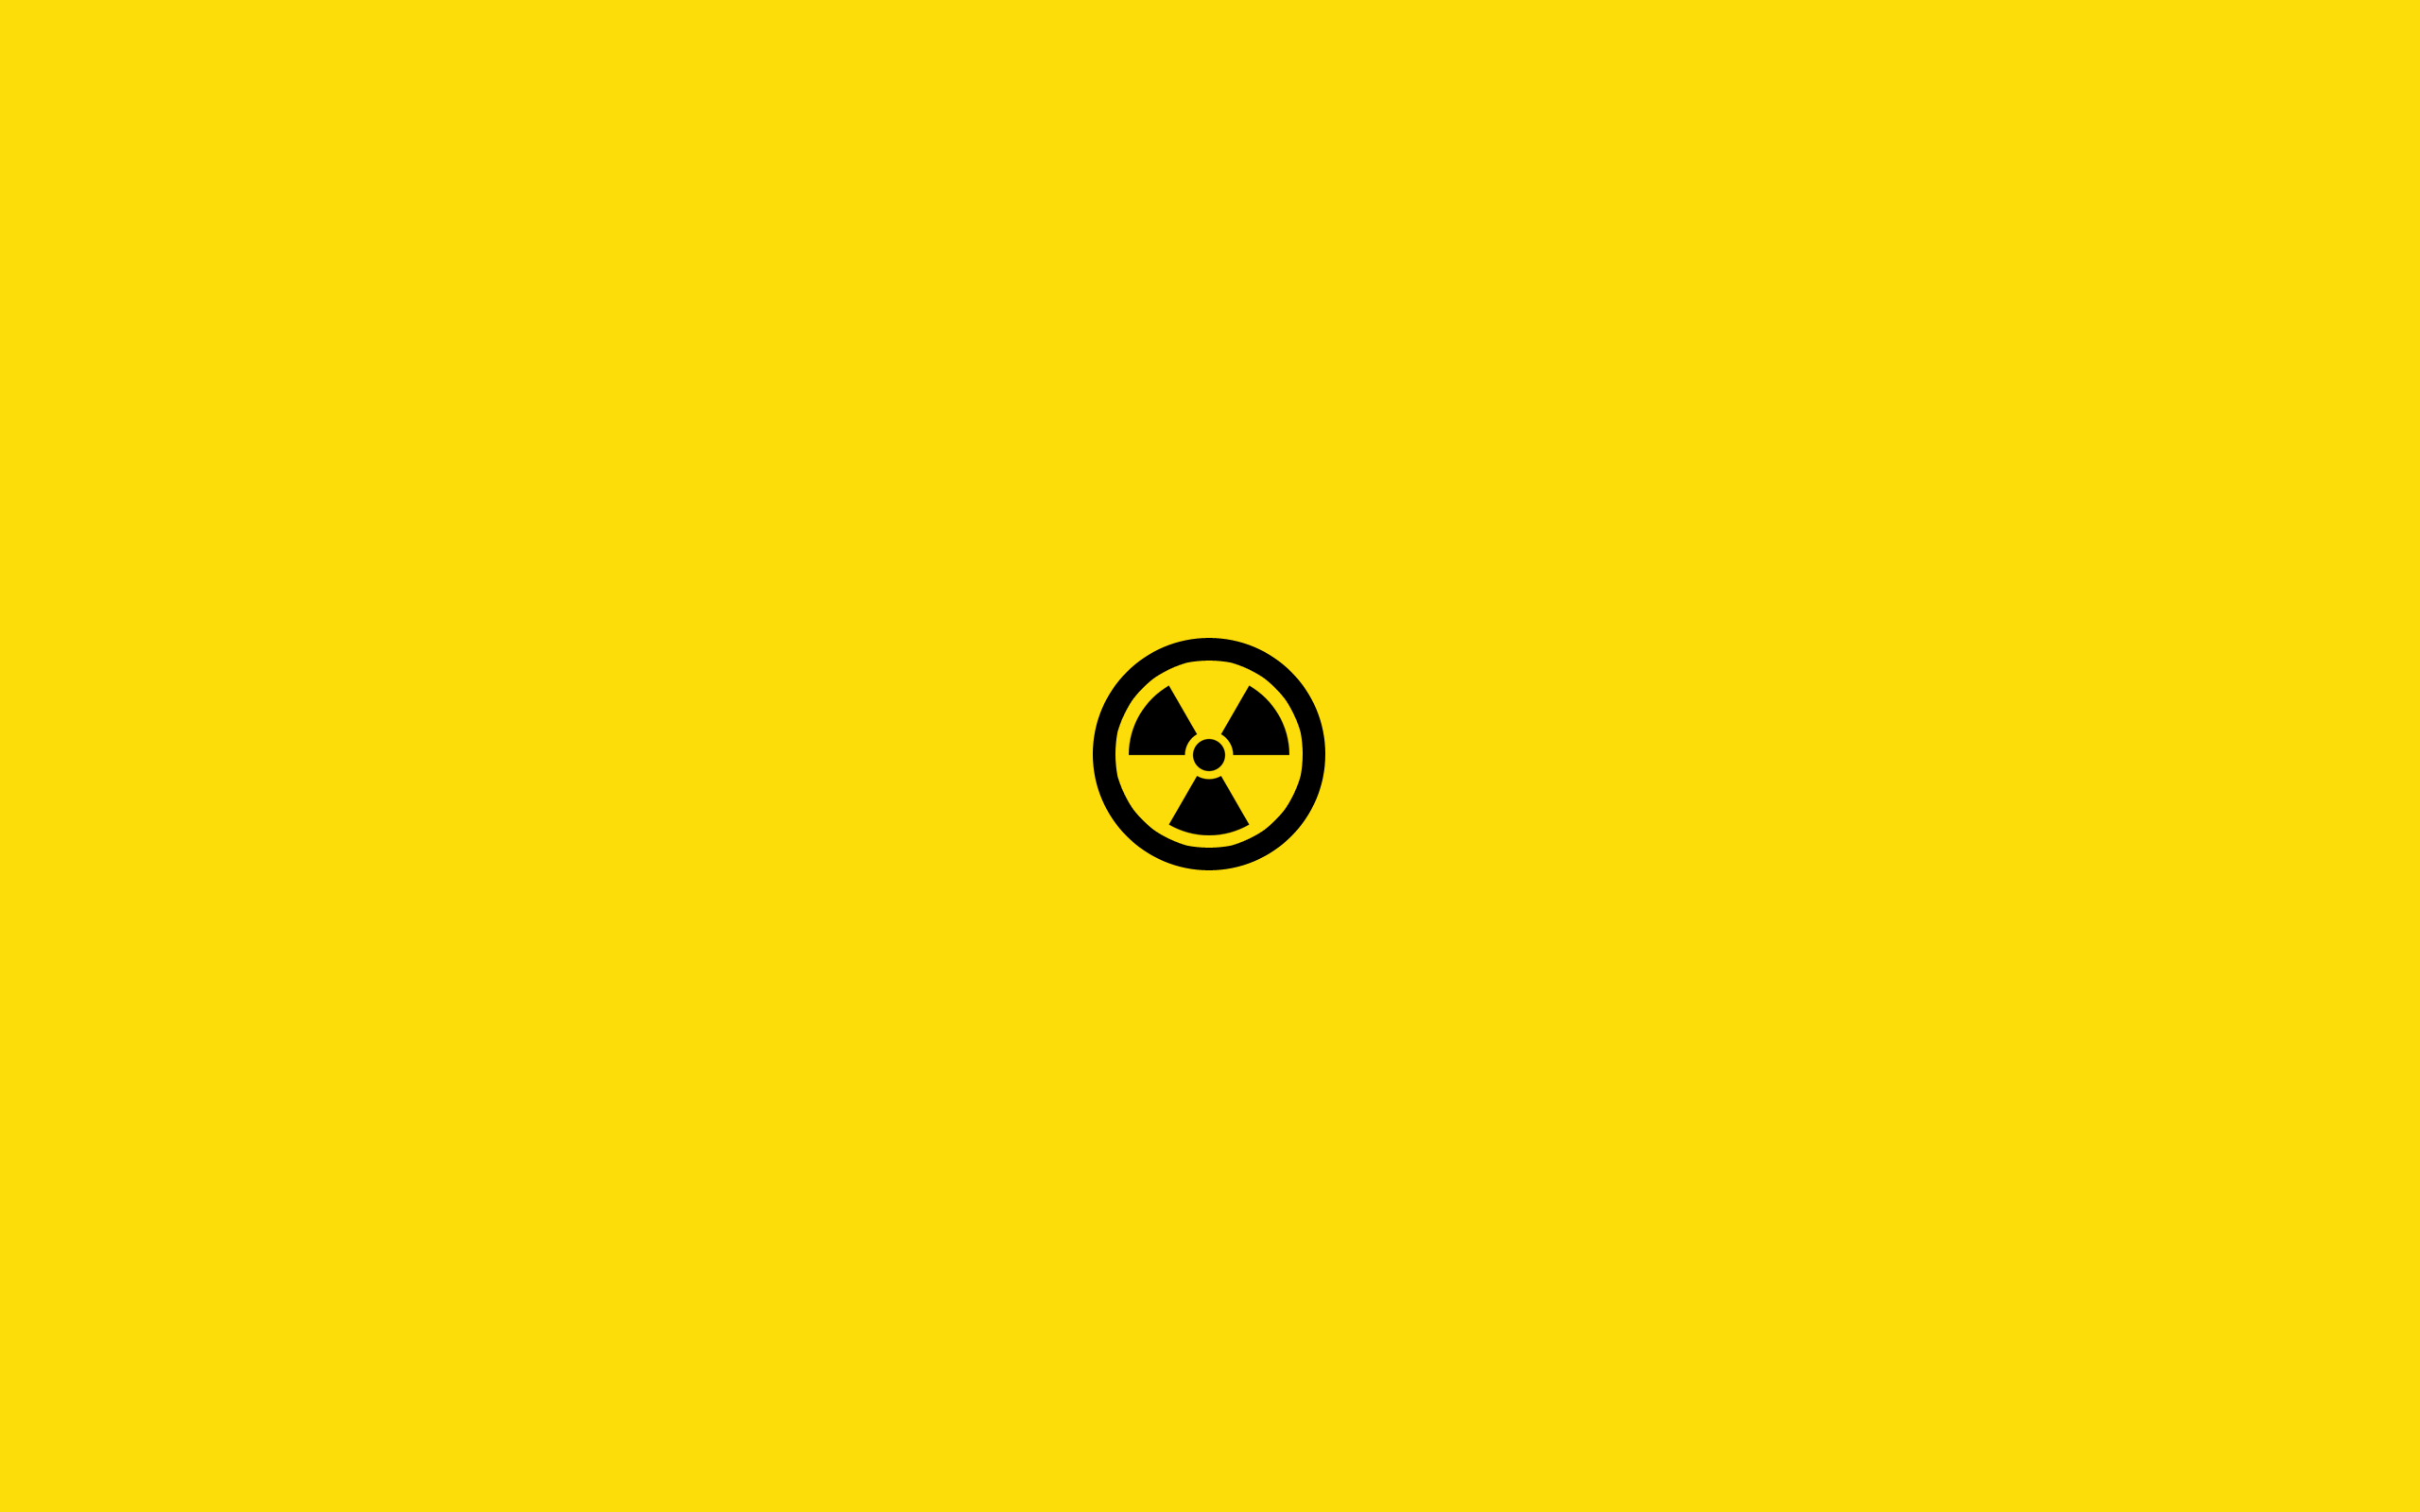 Nuclear symbol minimalist wallpaper | Minimal wallpapers